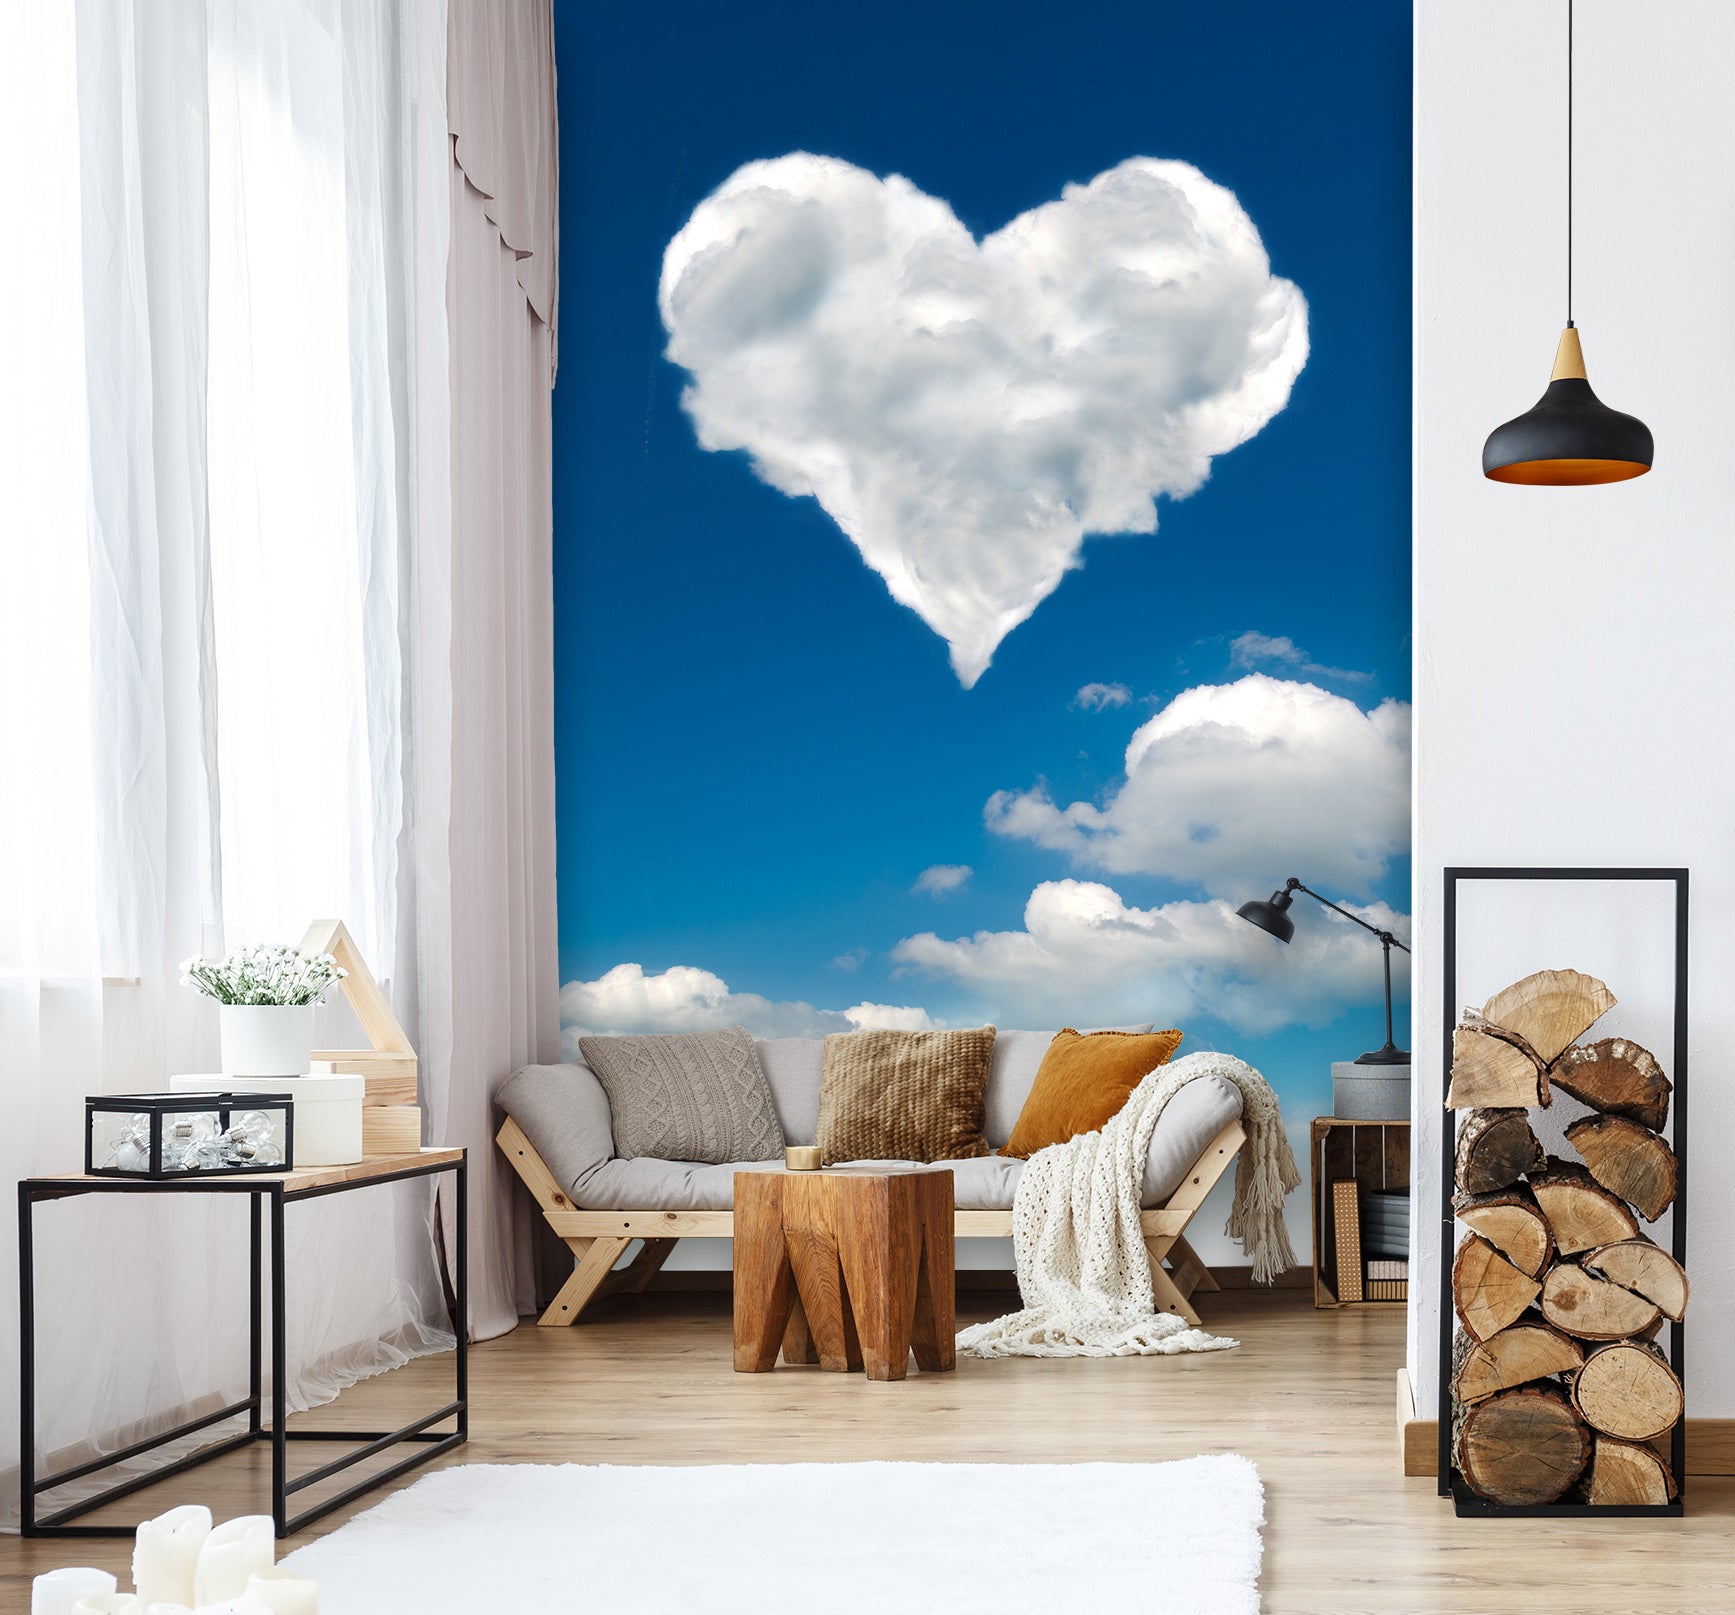 3D Love Cloud 1553 Wall Murals